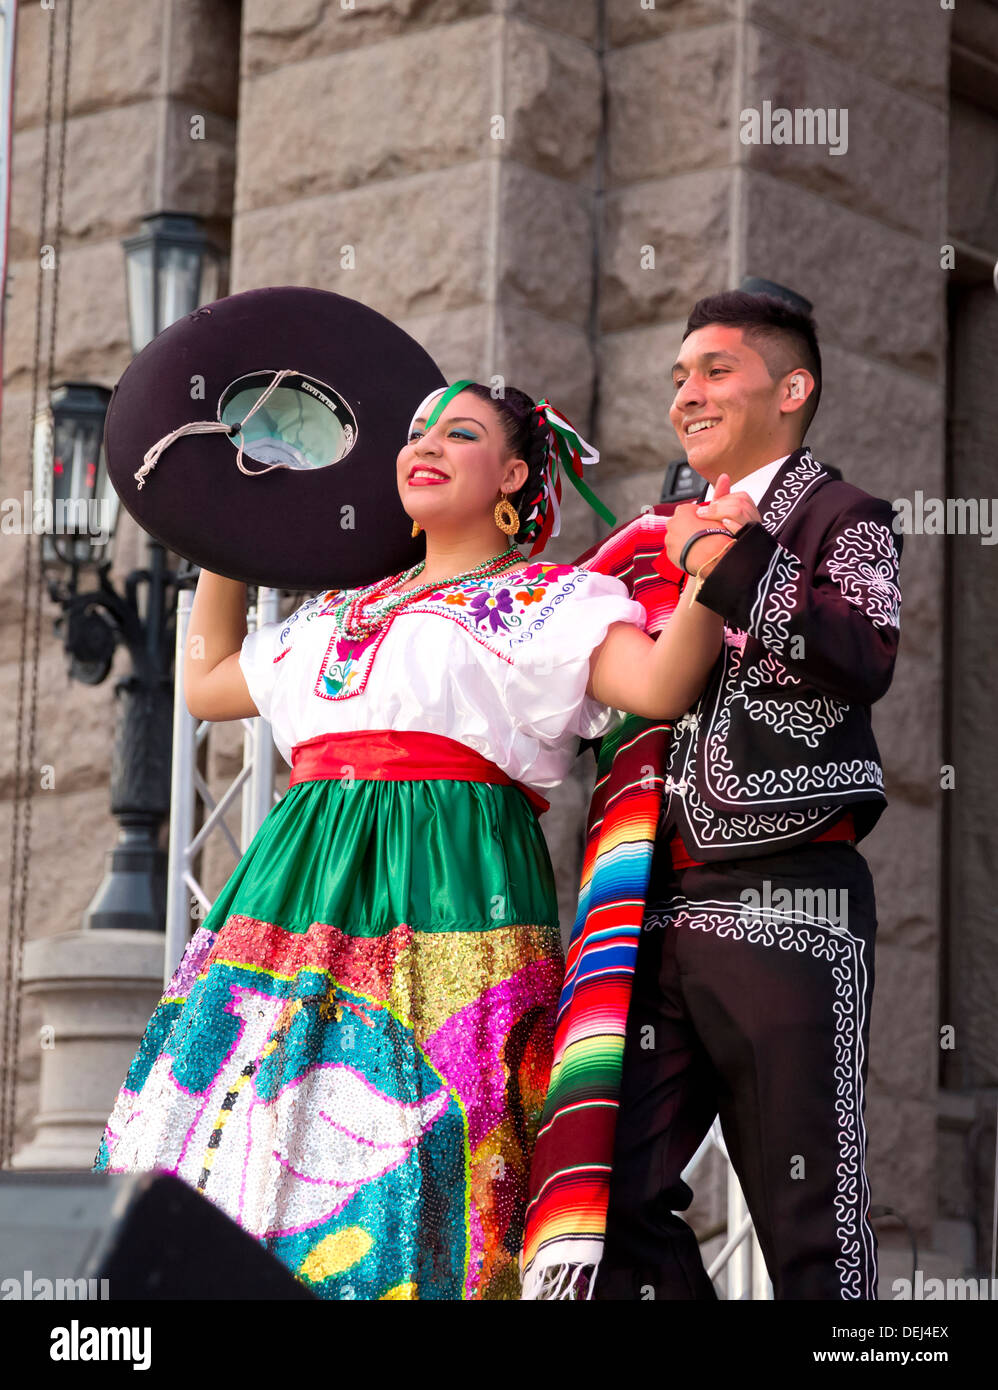 El baile del sombrero mexicano fotografías e imágenes de alta resolución -  Alamy